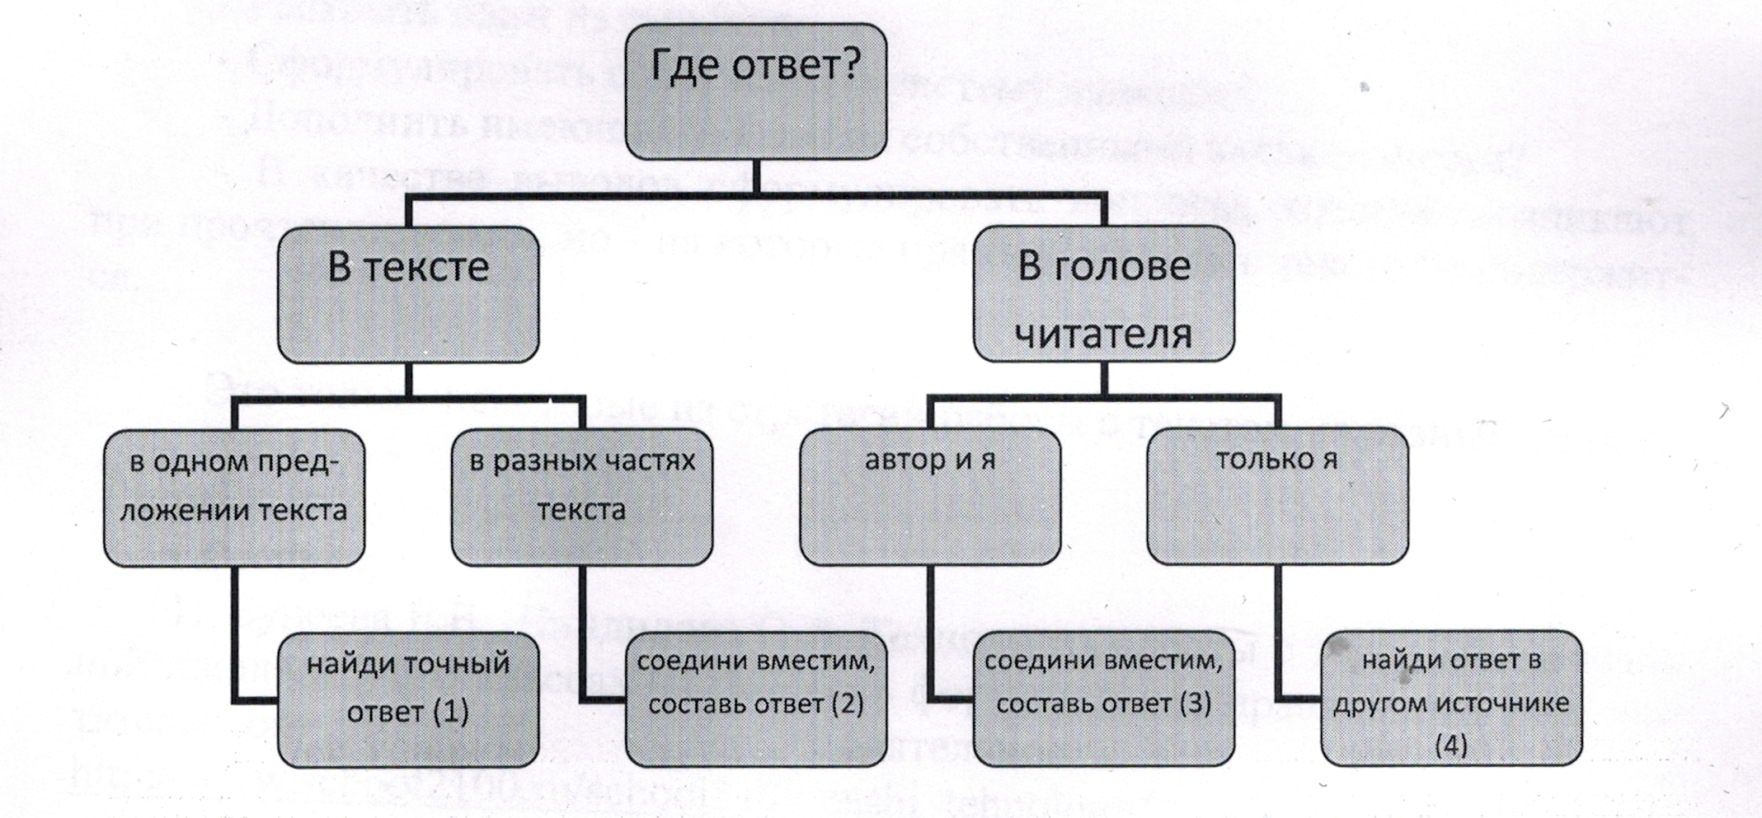 Конспект урока по русскому языку Человек создан для счастья, как птица для полёта (11 класс)